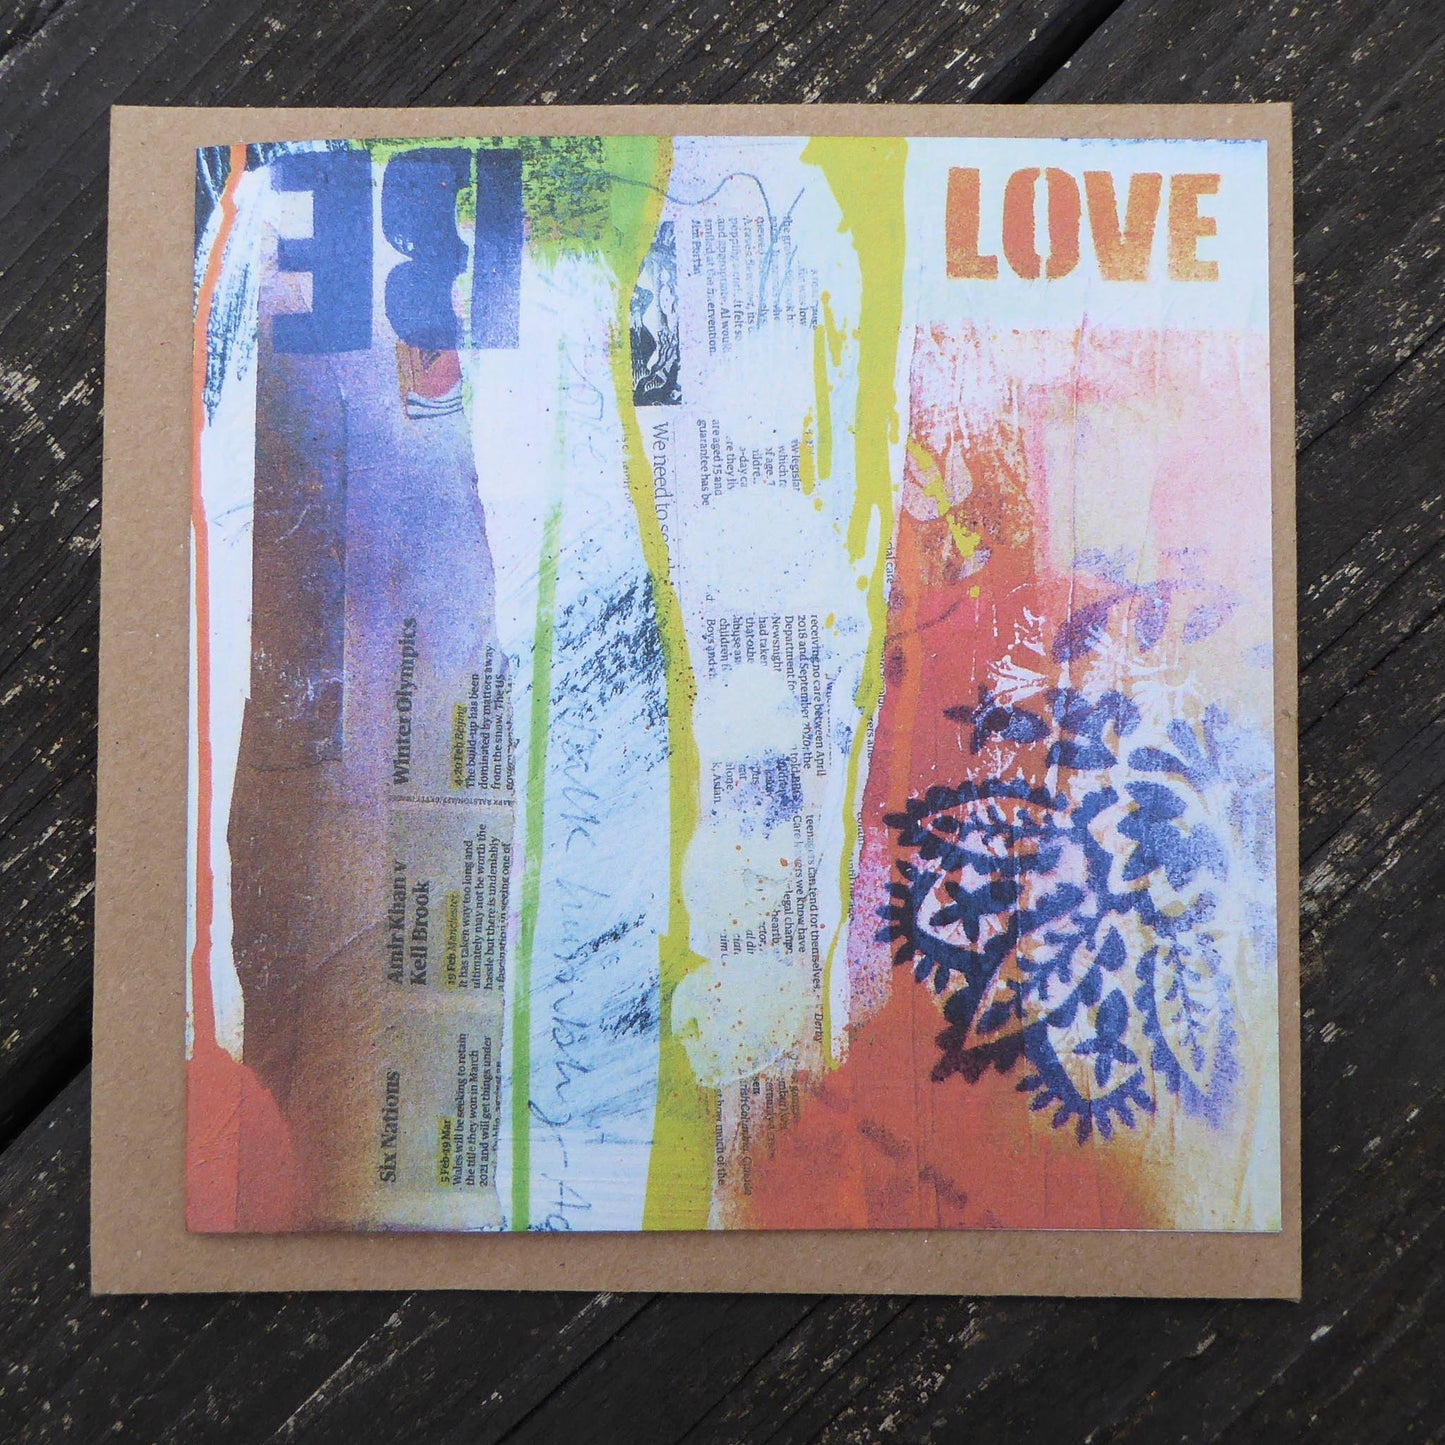 Single greetings card - re-cycled - blank inside - by Norfolk based artist Debbie Osborn